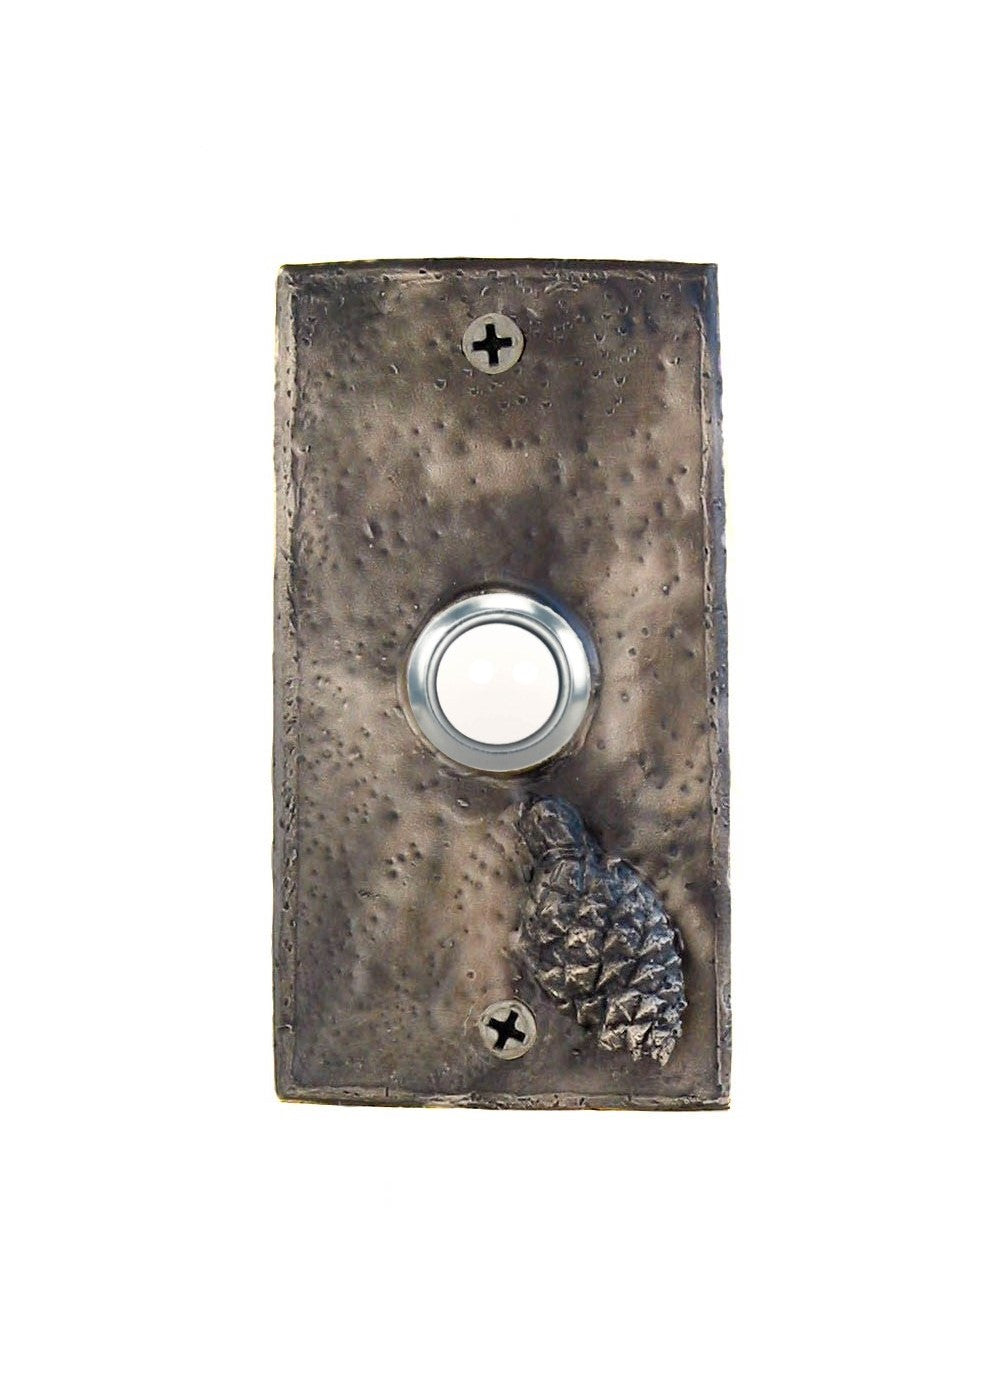 Rectangle Lodgepole Pinecone Doorbell